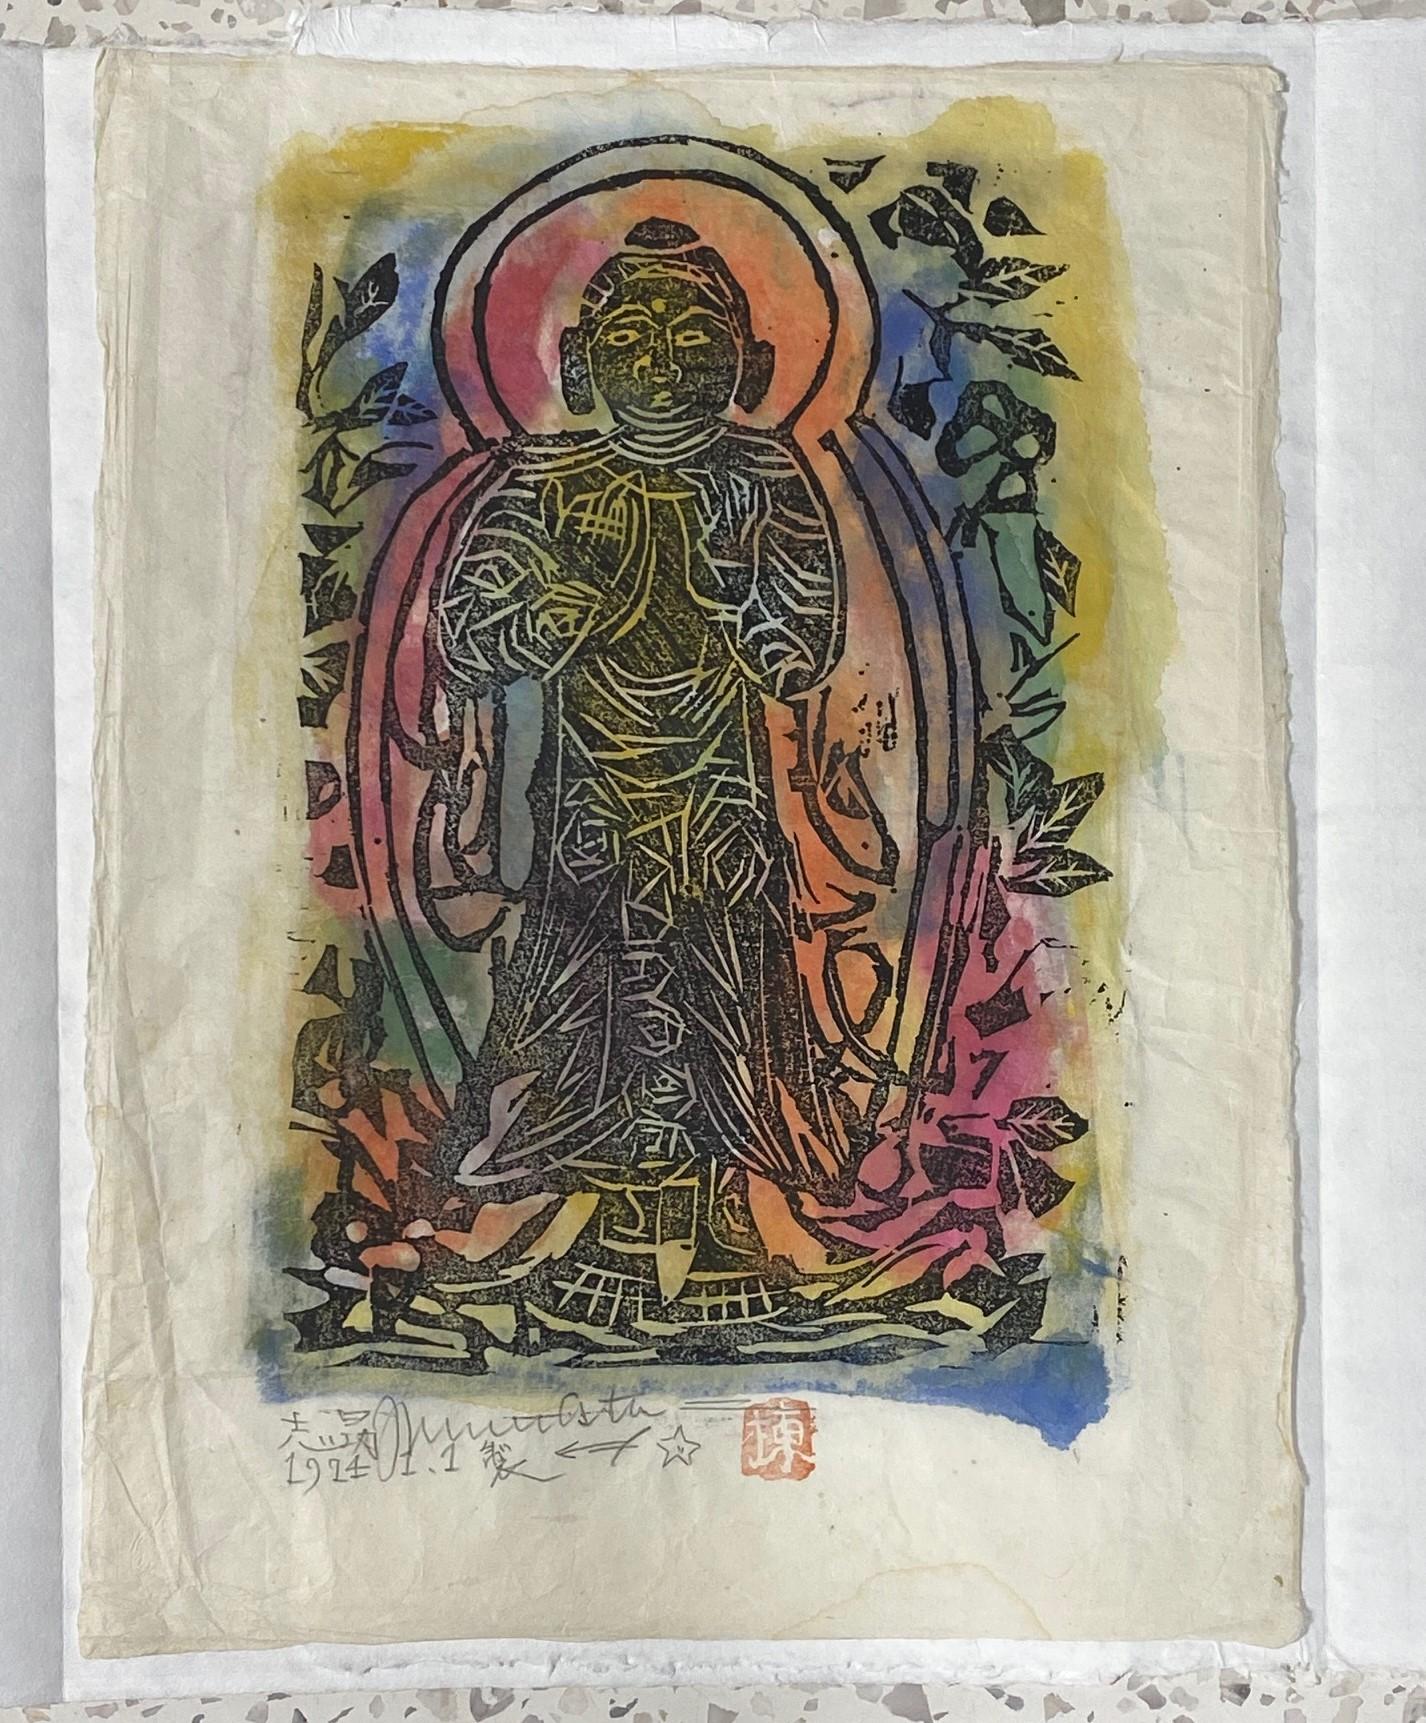 Ein wunderschöner Mingei-Holzschnitt mit dem Buddha oder Bodhisattva des berühmten japanischen Meisterdruckers und Künstlers der Showa-Ära, Shiko Munakata, der von vielen als einer der bedeutendsten modernen japanischen Künstler des zwanzigsten